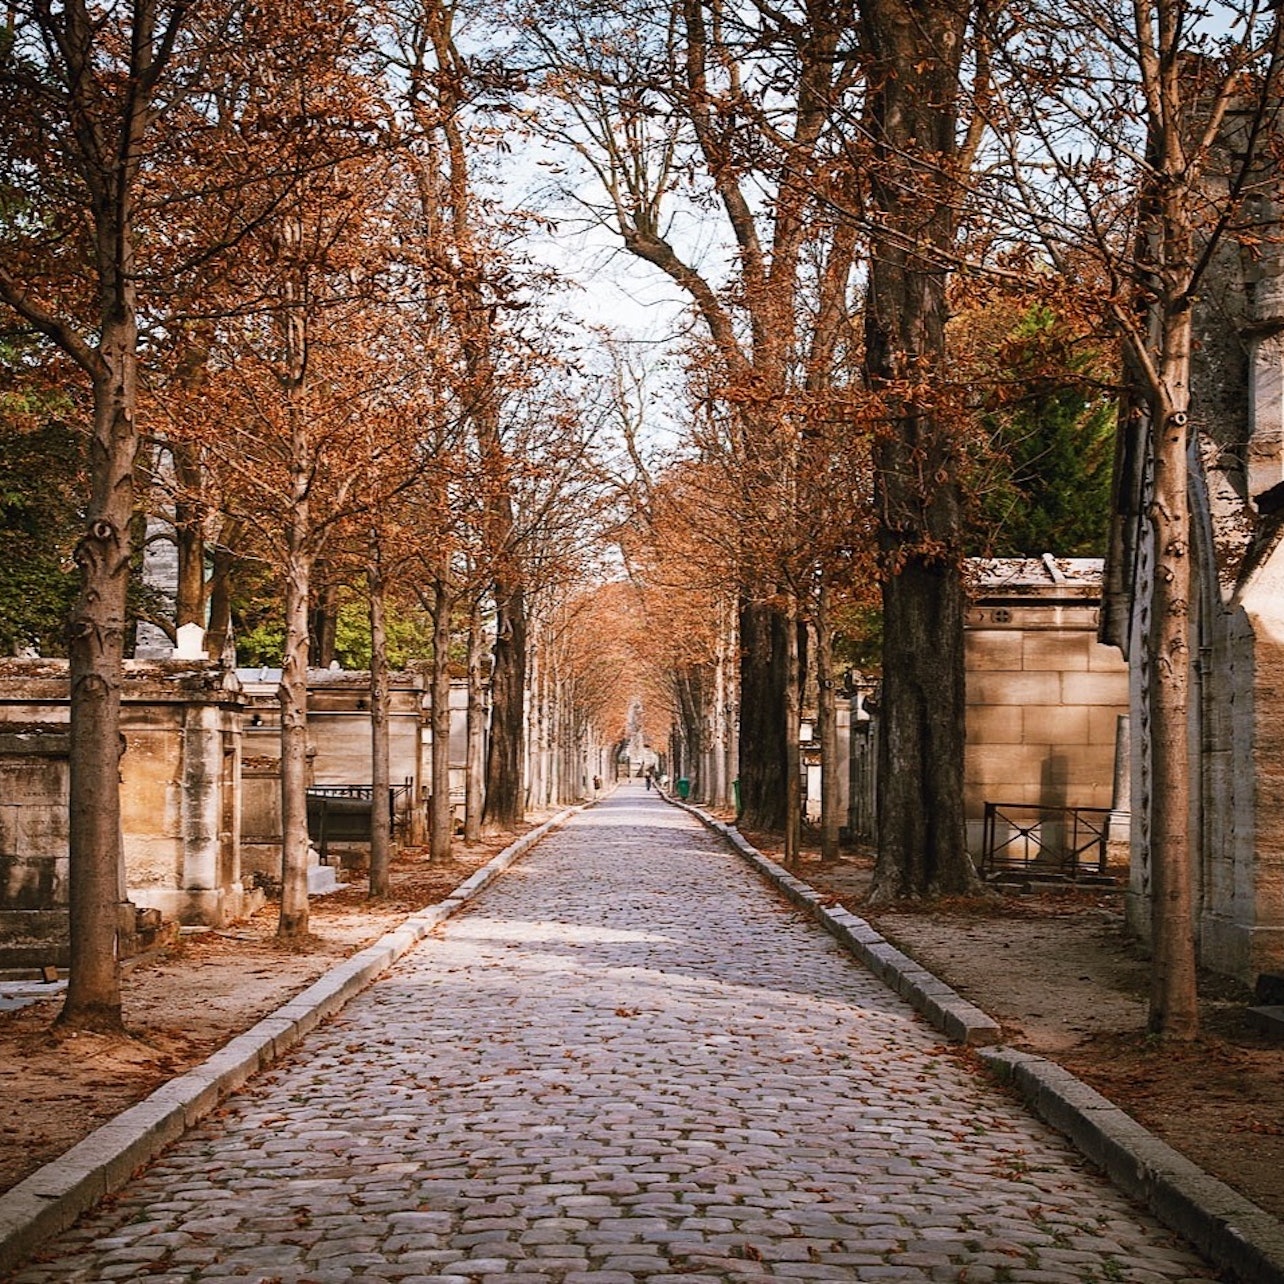 Picture of Père Lachaise Cemetery (Cimetière du Père Lachaise) in Paris, France